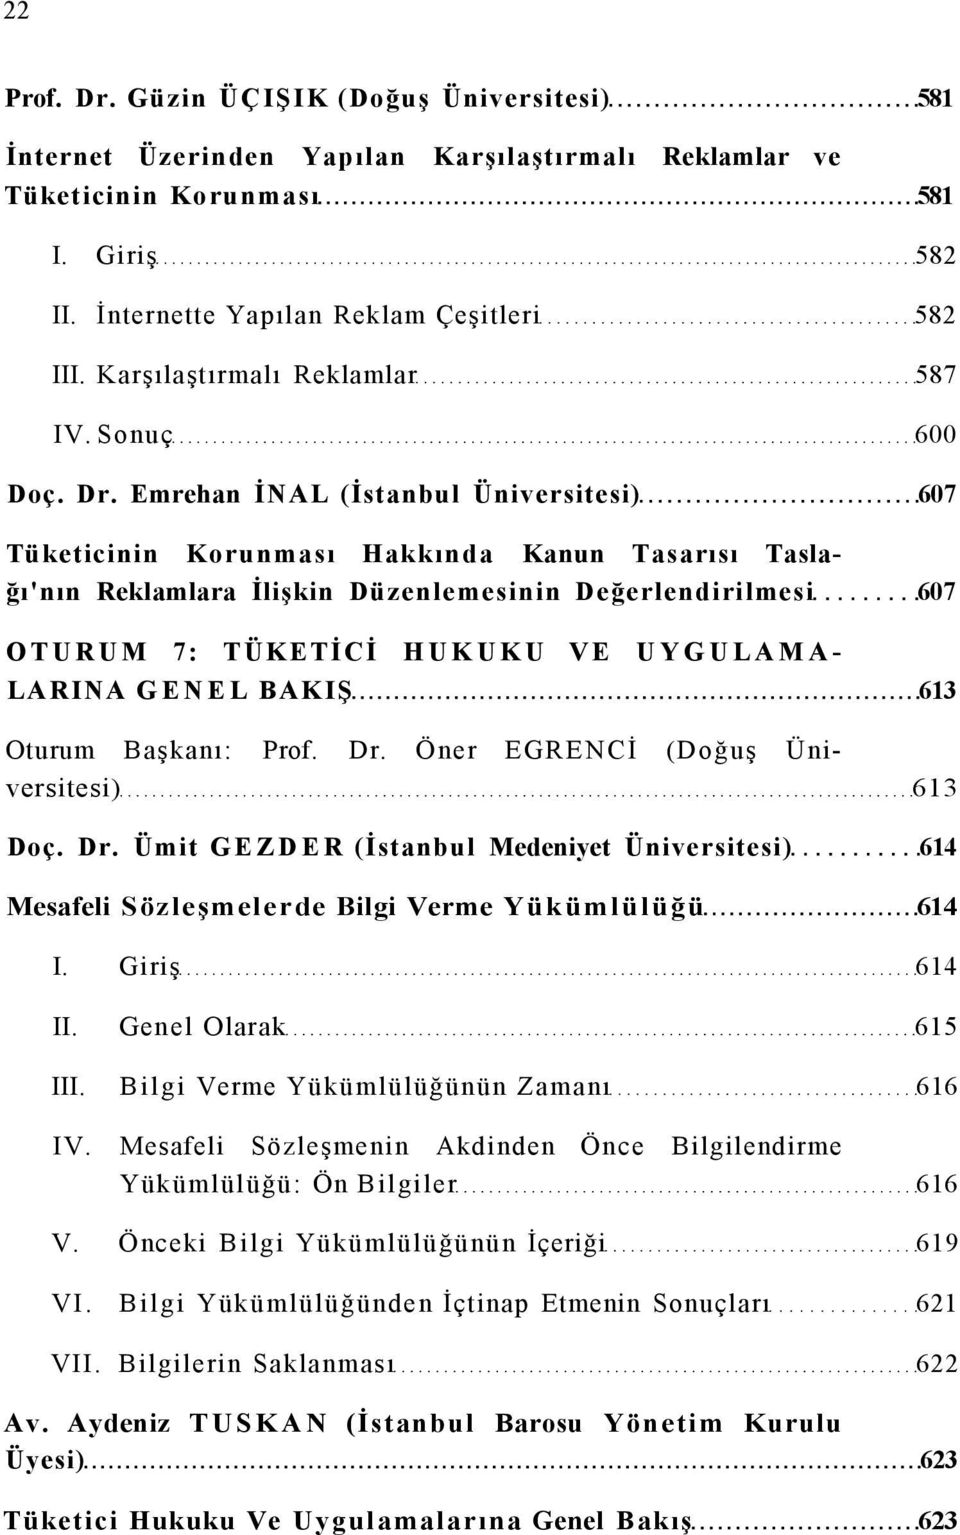 Emrehan İNAL (İstanbul Üniversitesi) 607 Tüketicinin Korunması Hakkında Kanun Tasarısı Taslağı'nın Reklamlara İlişkin Düzenlemesinin Değerlendirilmesi 607 OTURUM 7: TÜKETİCİ HUKUKU VE UYGULAMA LARINA